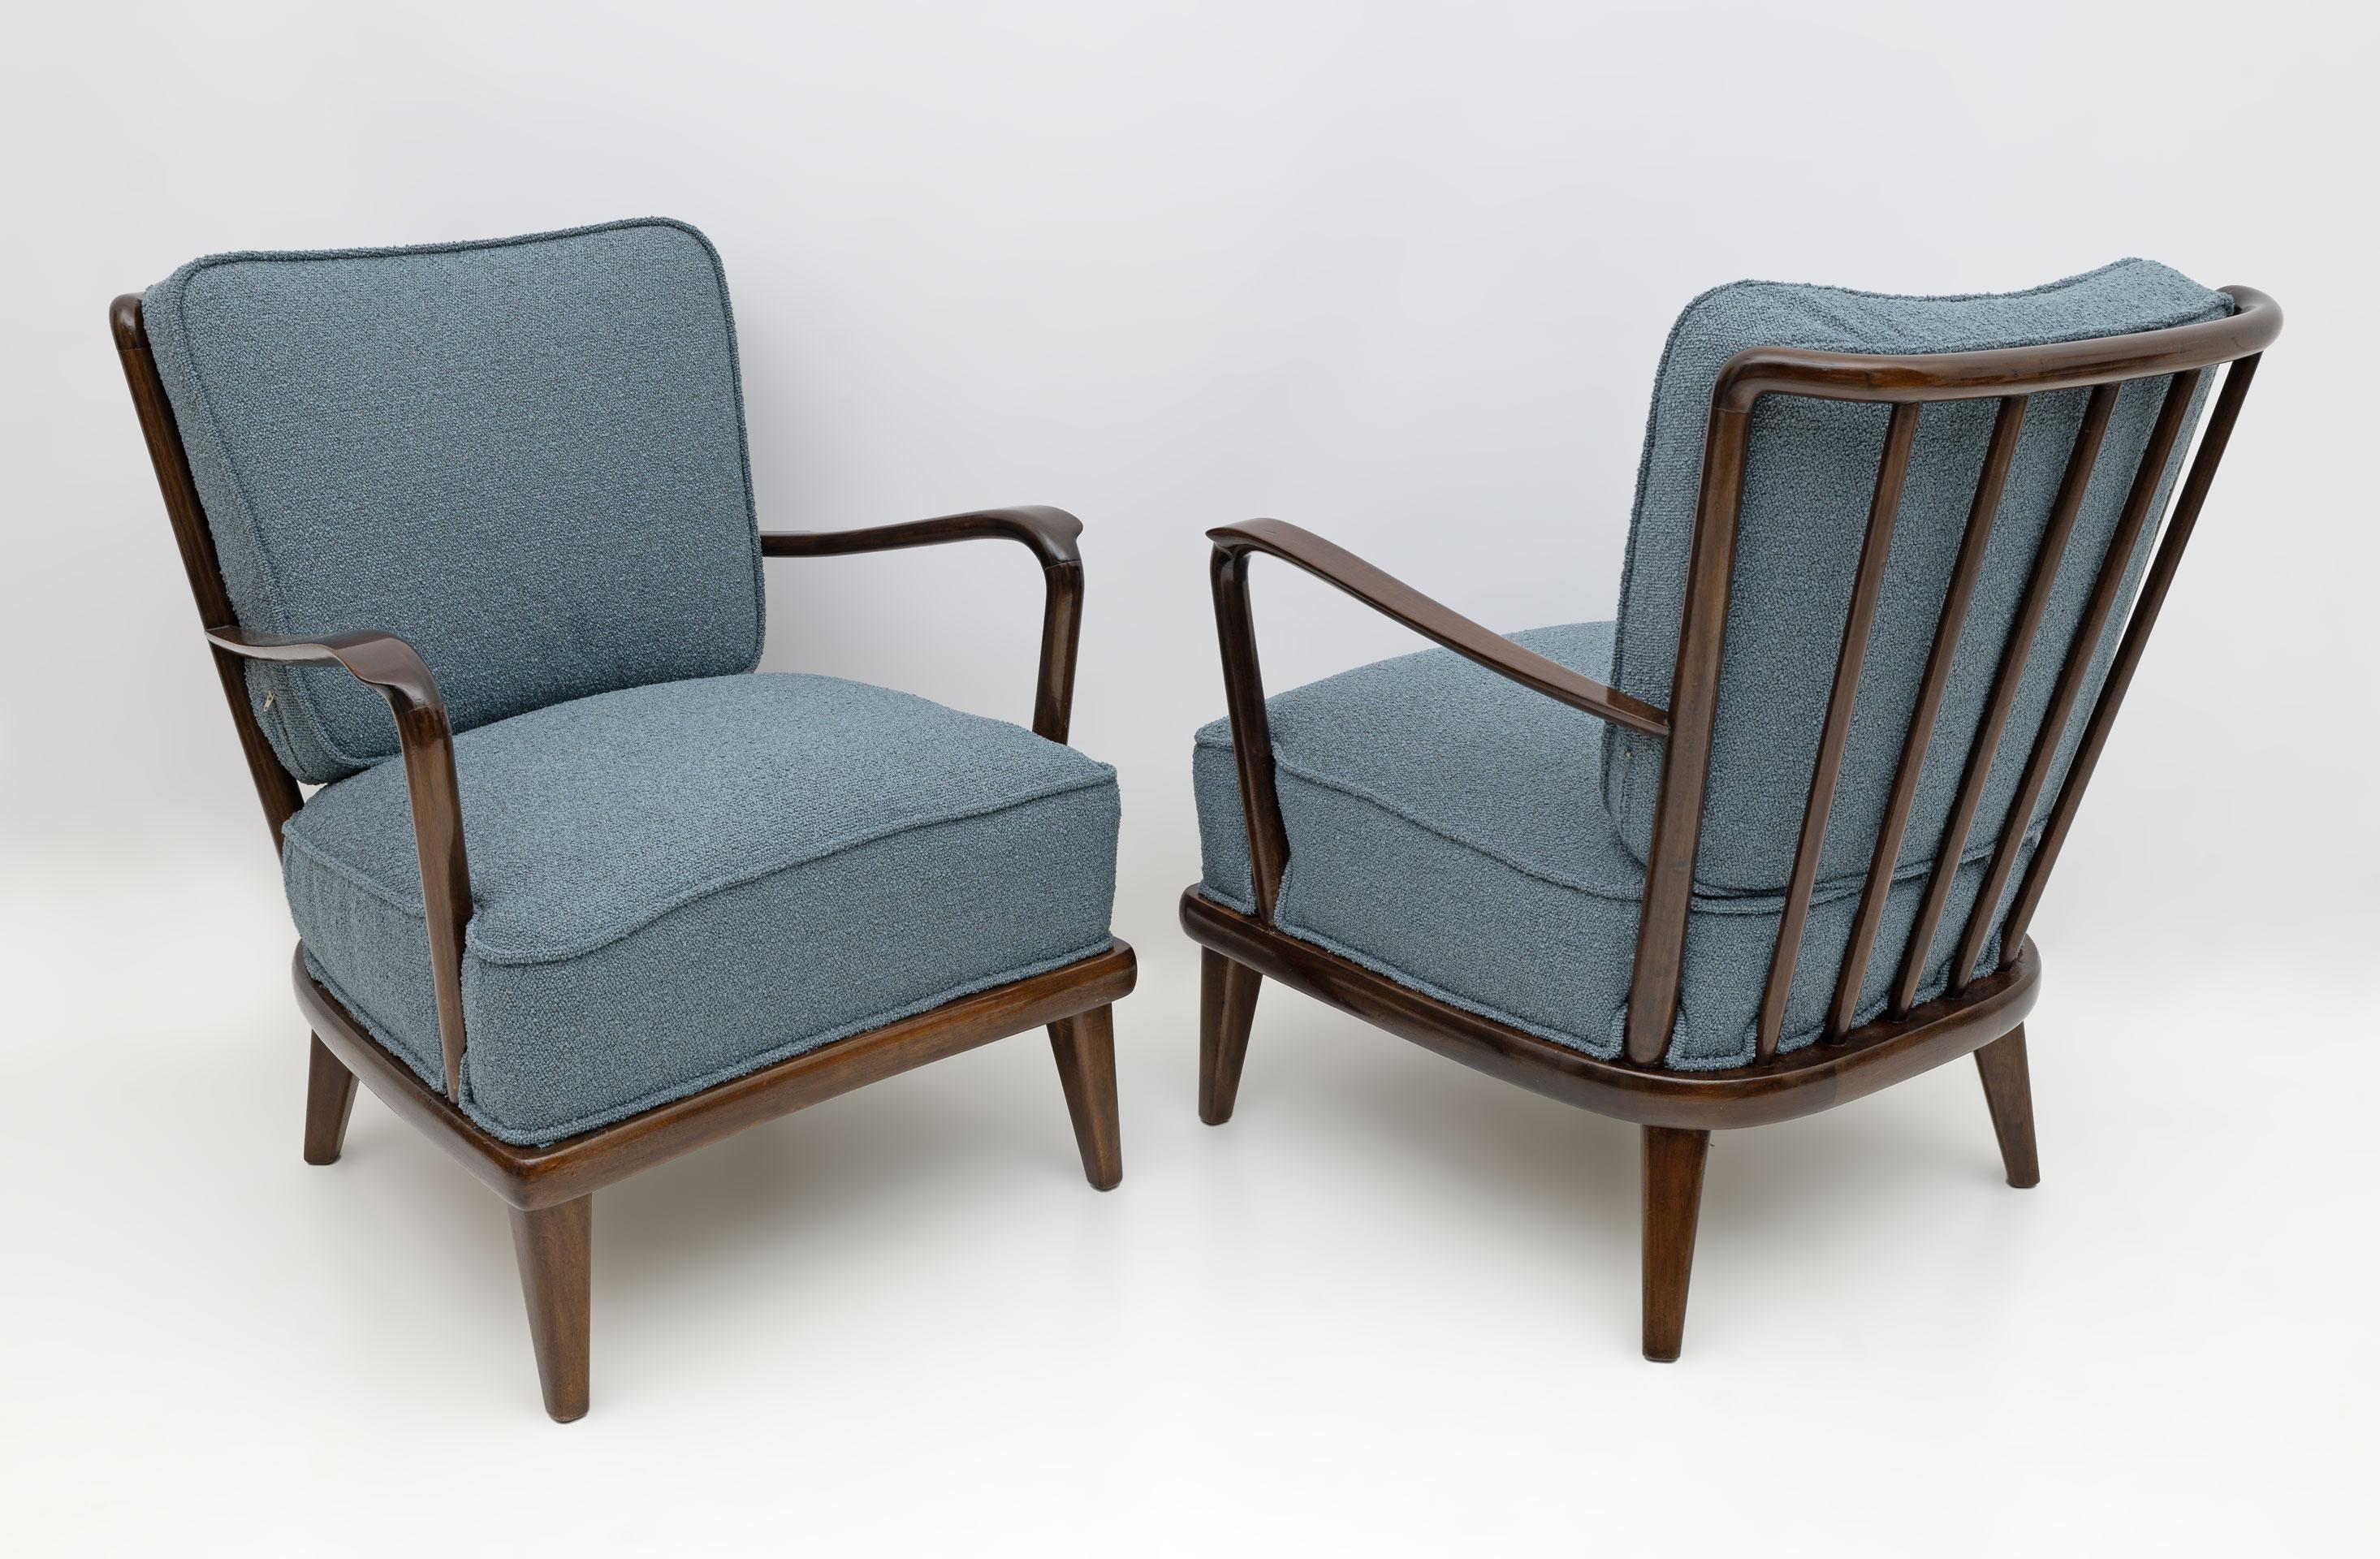 Dieses Paar spektakulärer Loungesessel wurde in Italien in den 1950er Jahren hergestellt! Mit ihrem Gestell aus dunklem Walnussholz, der dezent geschwungenen Rückenlehne und den geschwungenen Armlehnen repräsentieren diese Sessel das Beste an